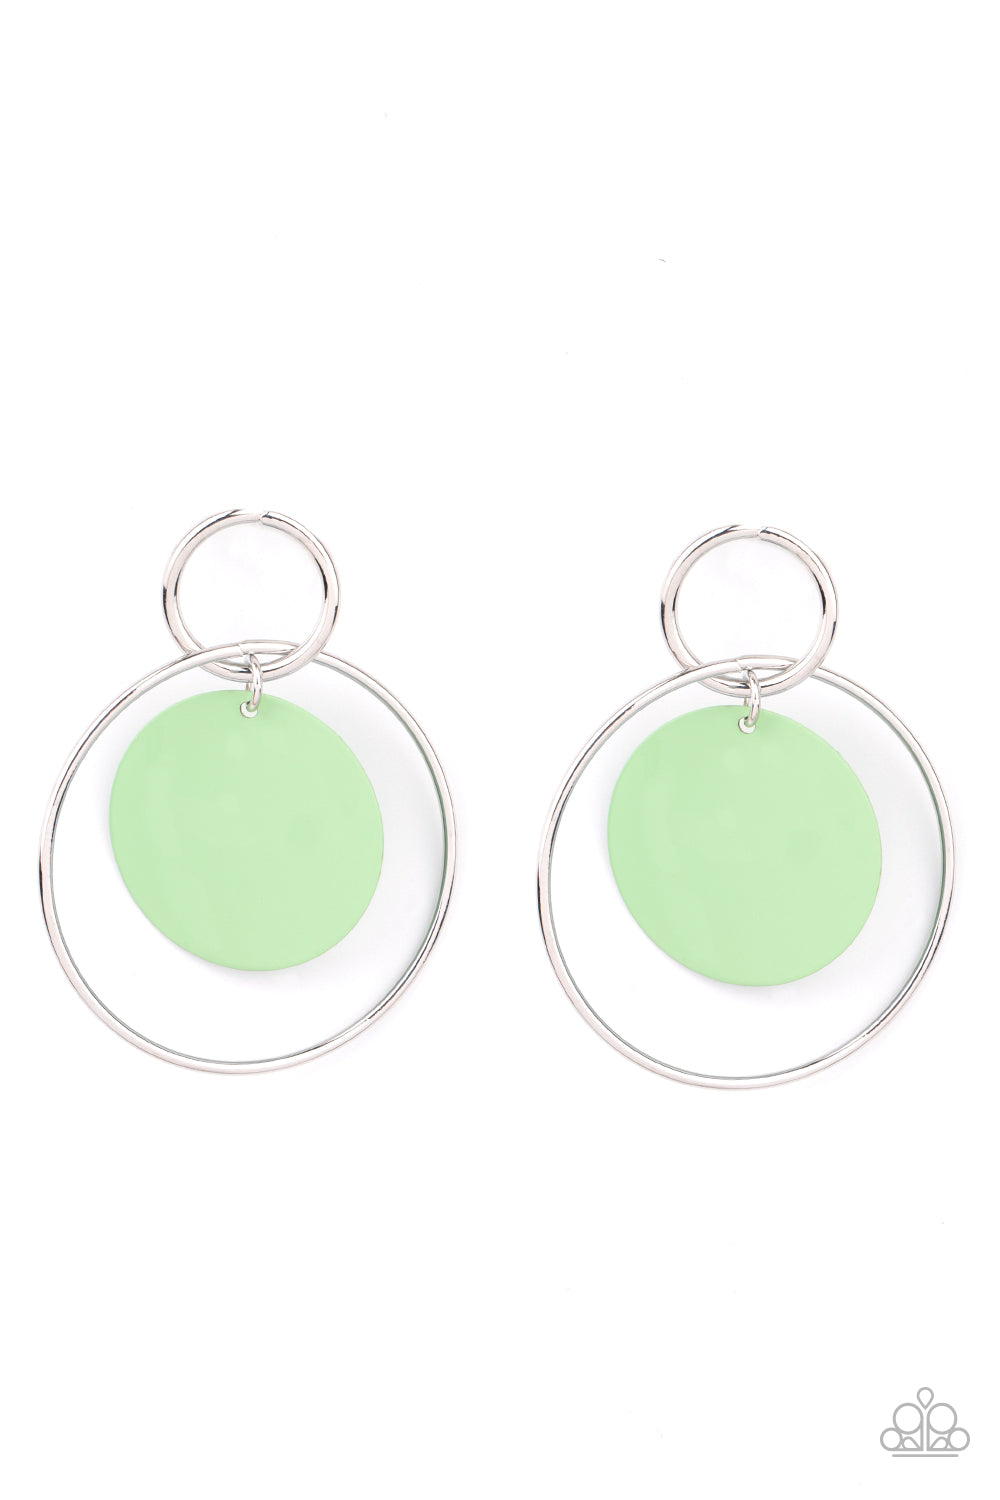 POP, Look, and Listen - green - Paparazzi earrings